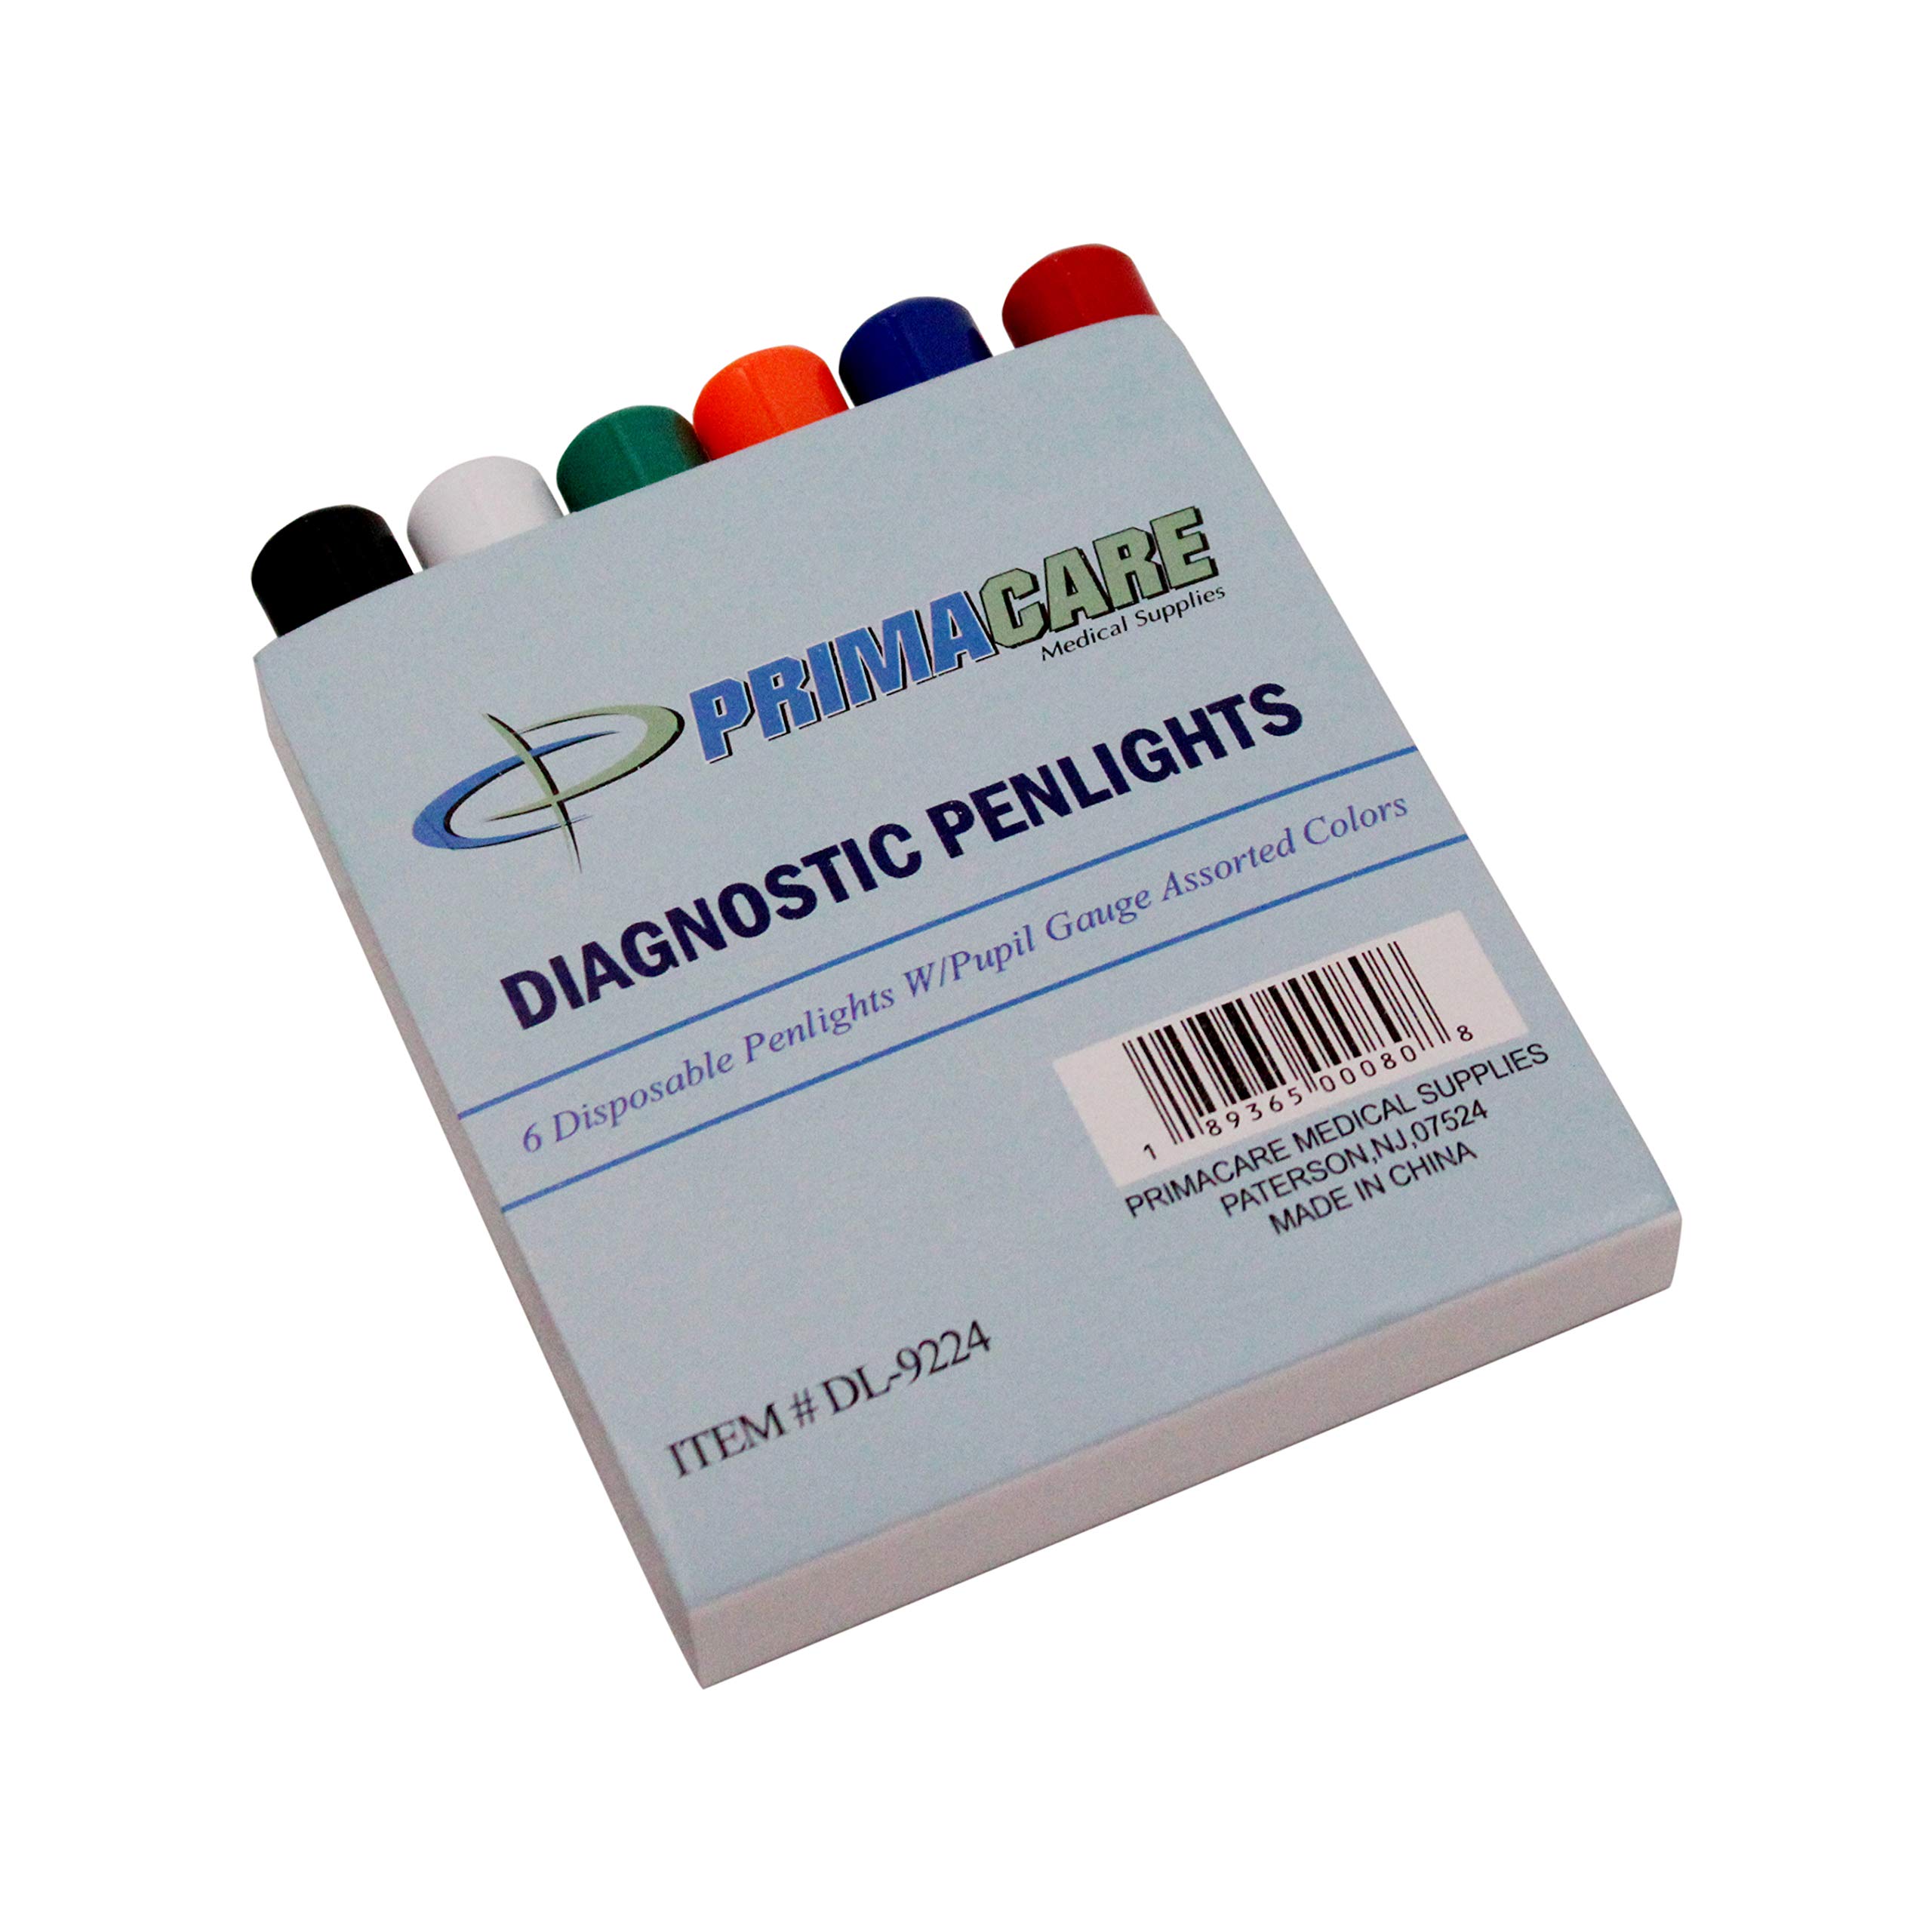 Primacare DL-9224 Pack of 6 Disposable Diagnostic Penlight with Imprinted Pupil Gauge, Lightweight and Moulded Plastic Body Medical Pen Light for Nurse, Student, Doctors EMT, Multicolor